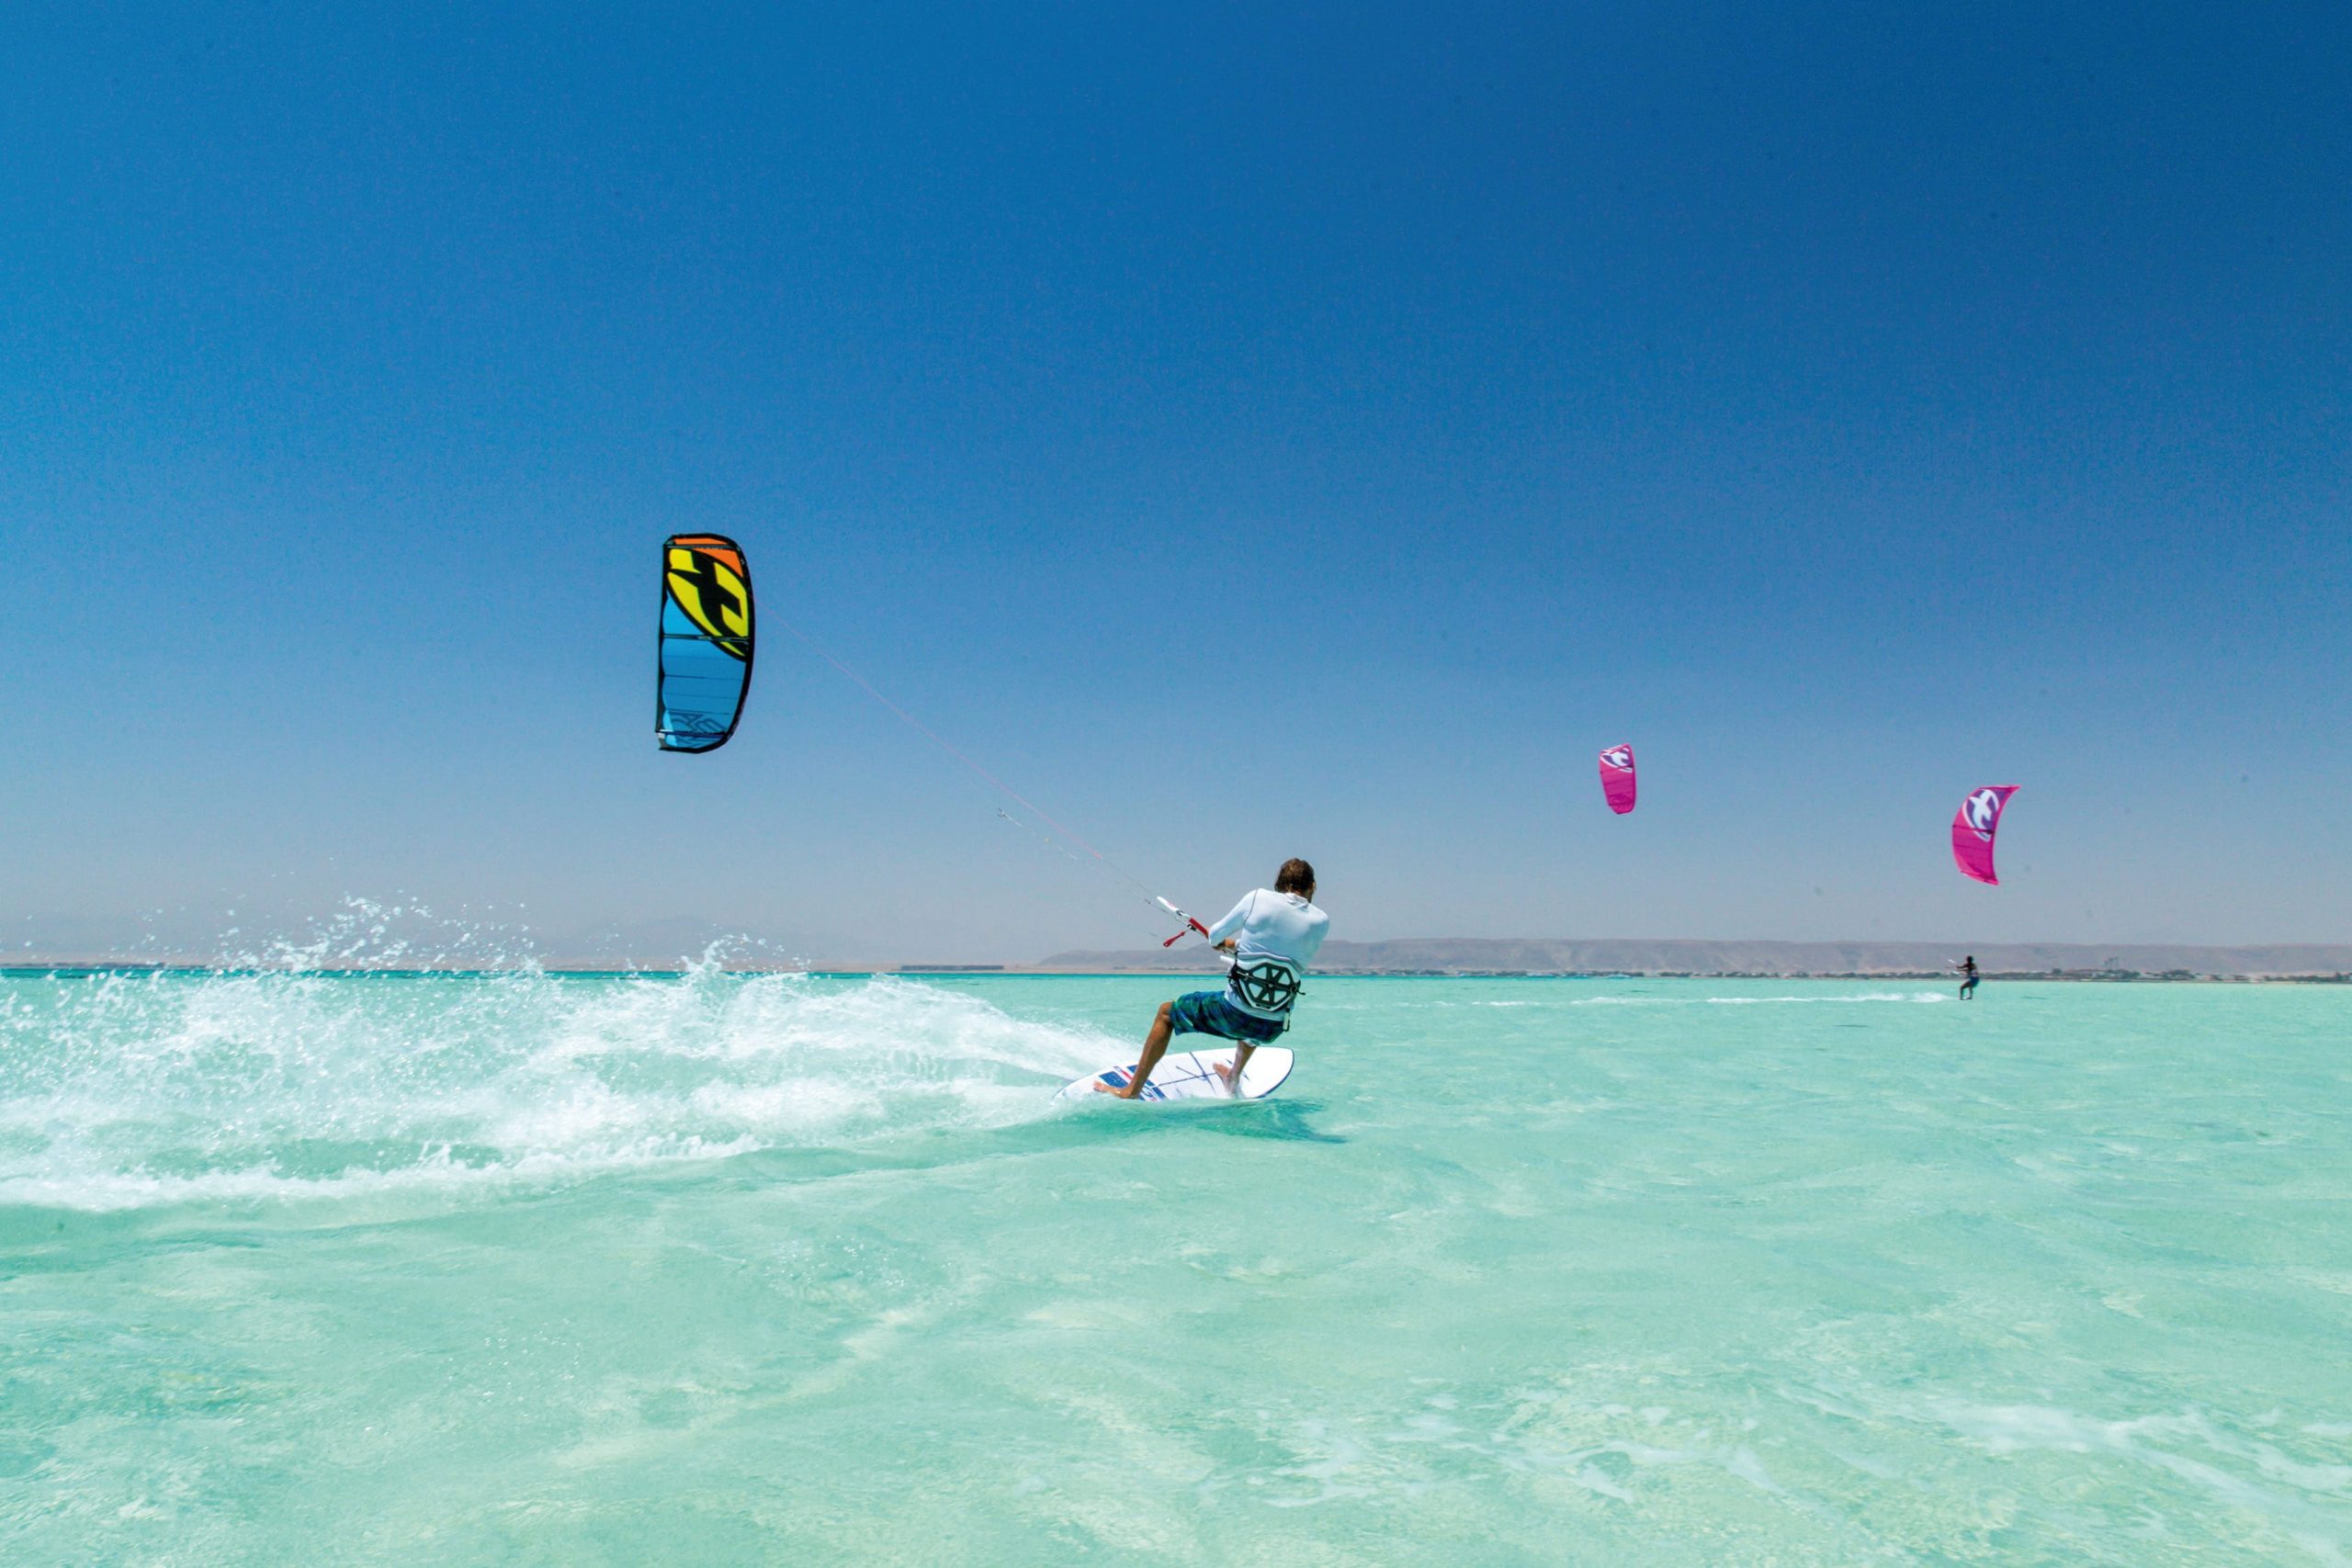 Kite surfing, kitesurfing, sea, water sports, summer, sky, turquoise